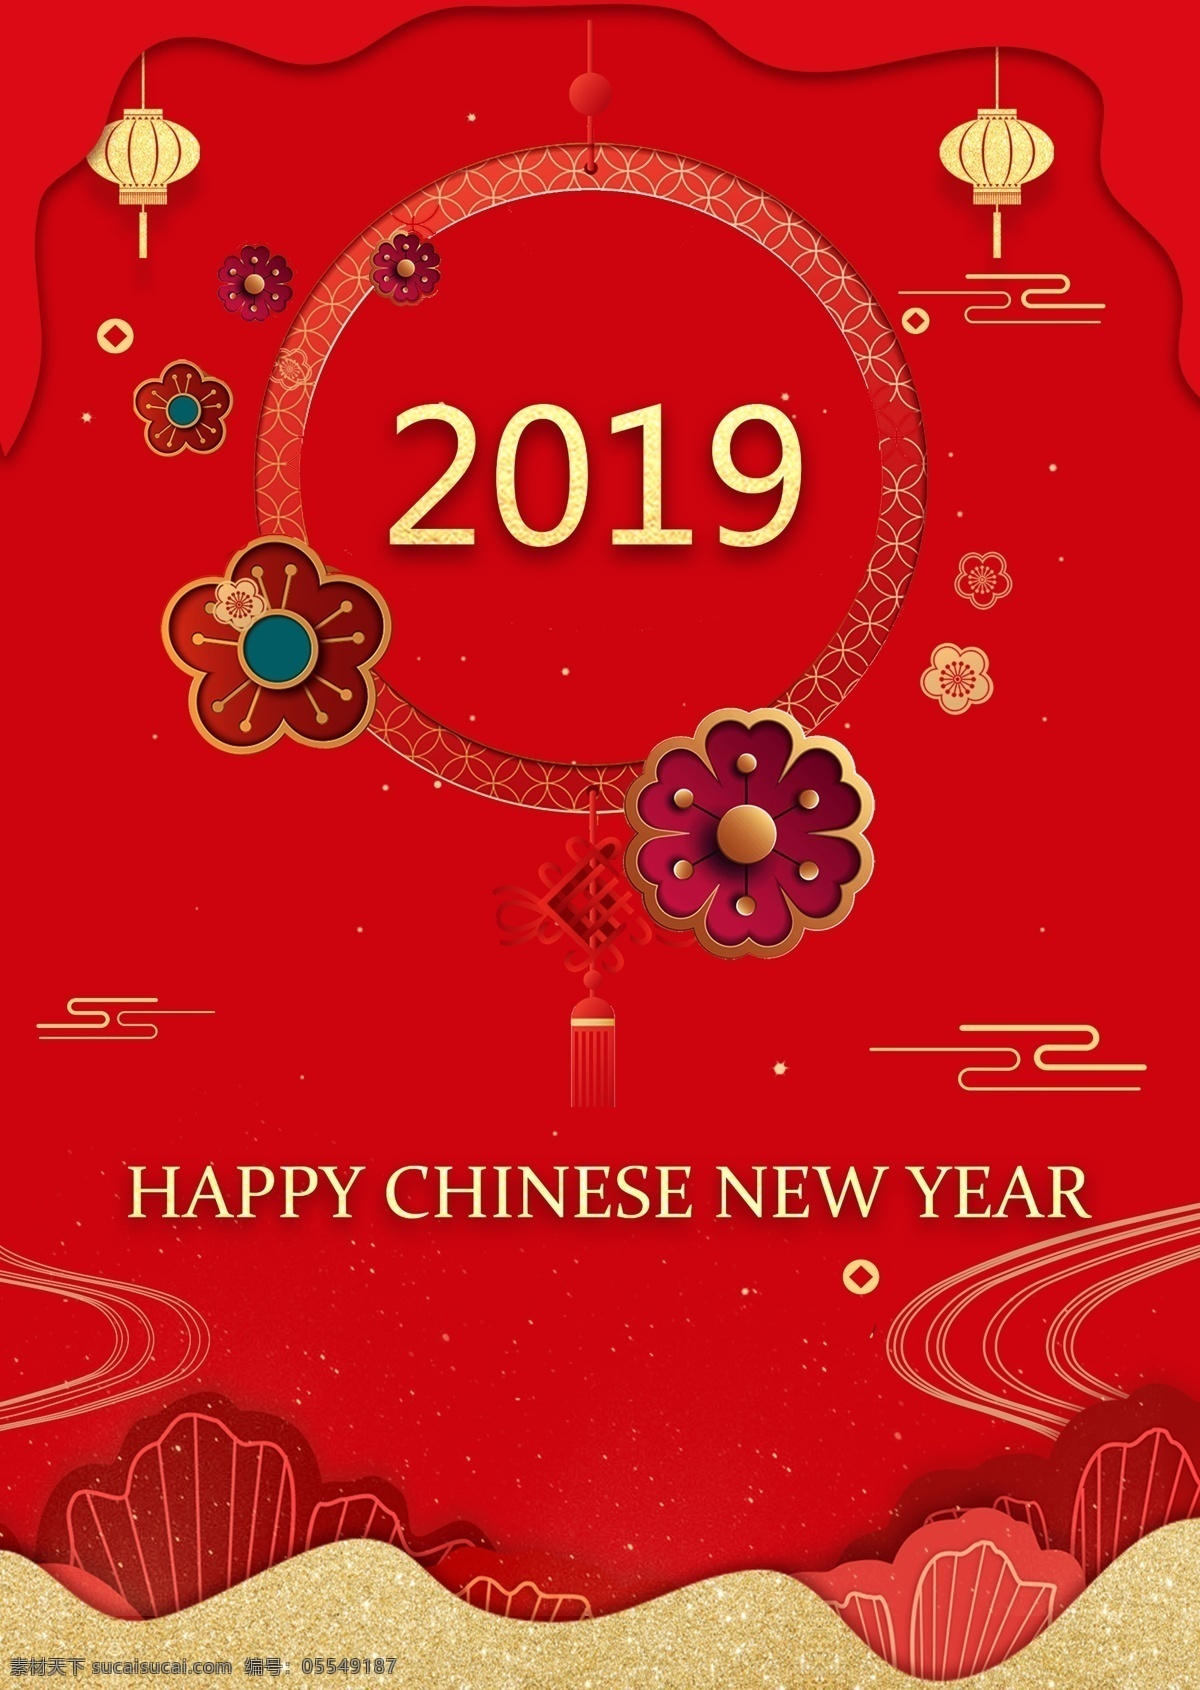 中国 红 竹简 2019 年 二千一十九 中国的一年 一堆云 传统 古代 圈 梅花 海报模板 灯笼 向量 祥云 简单 精巧 红色 英语 金色